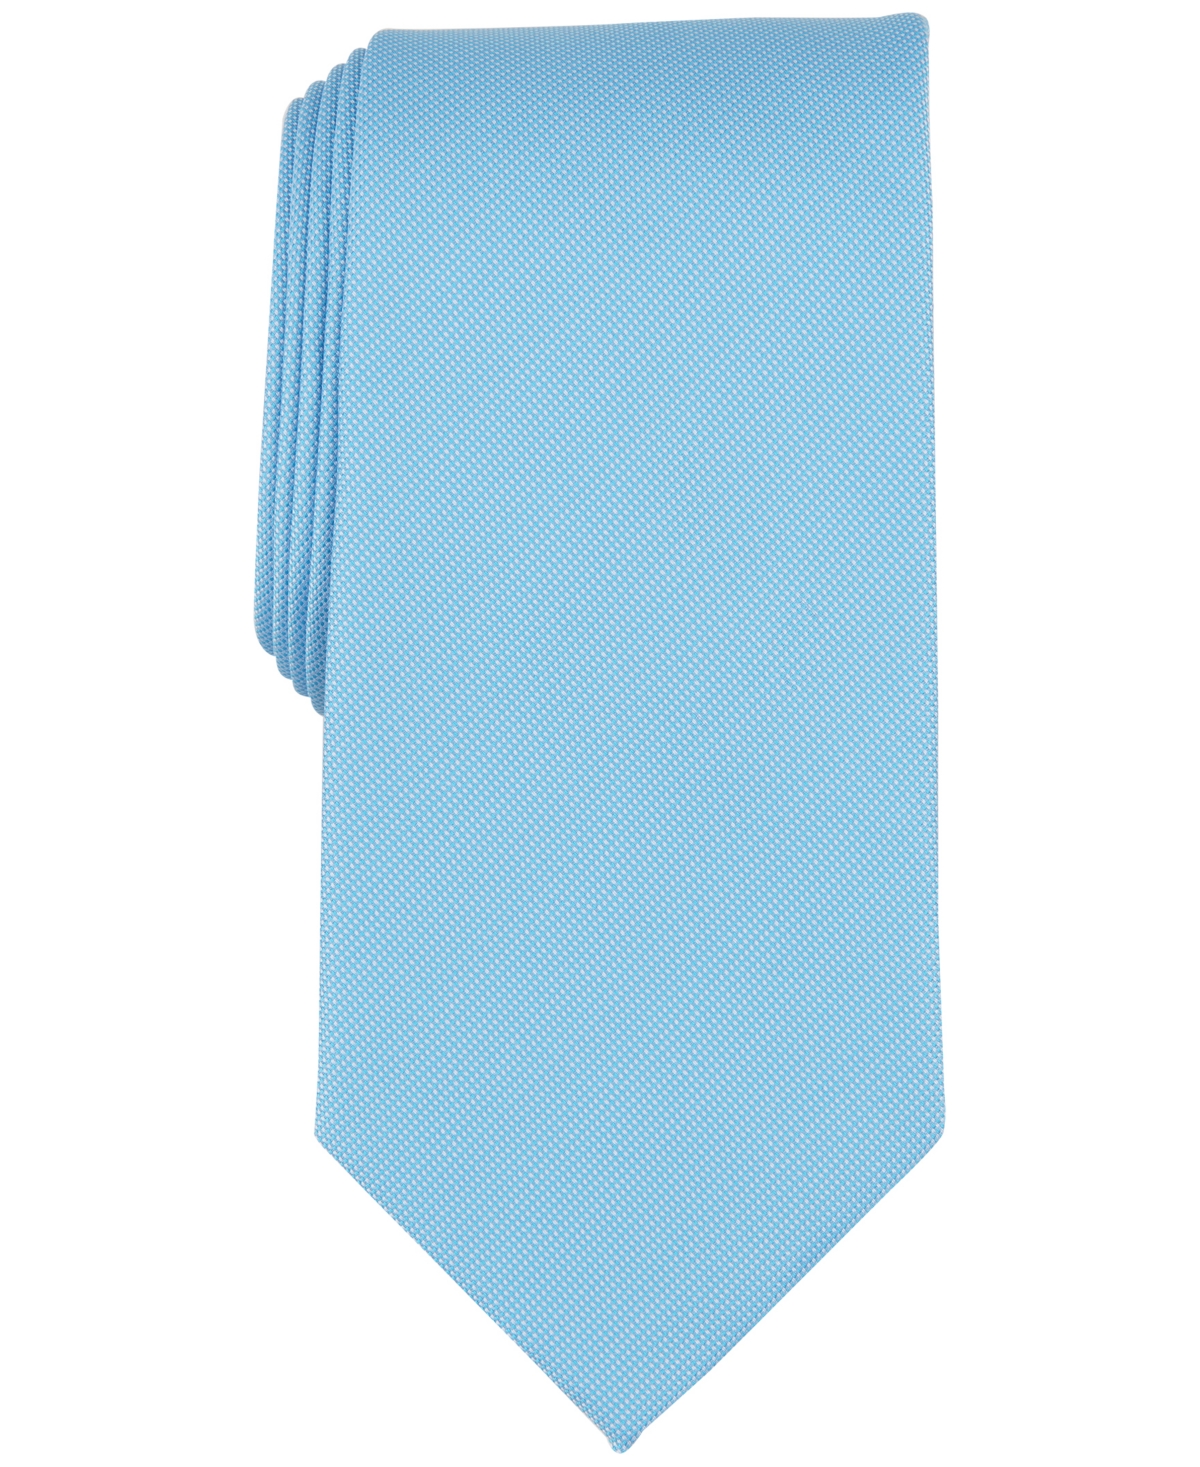 Men's Beech Solid Textured Tie, Created for Macy's - Aqua